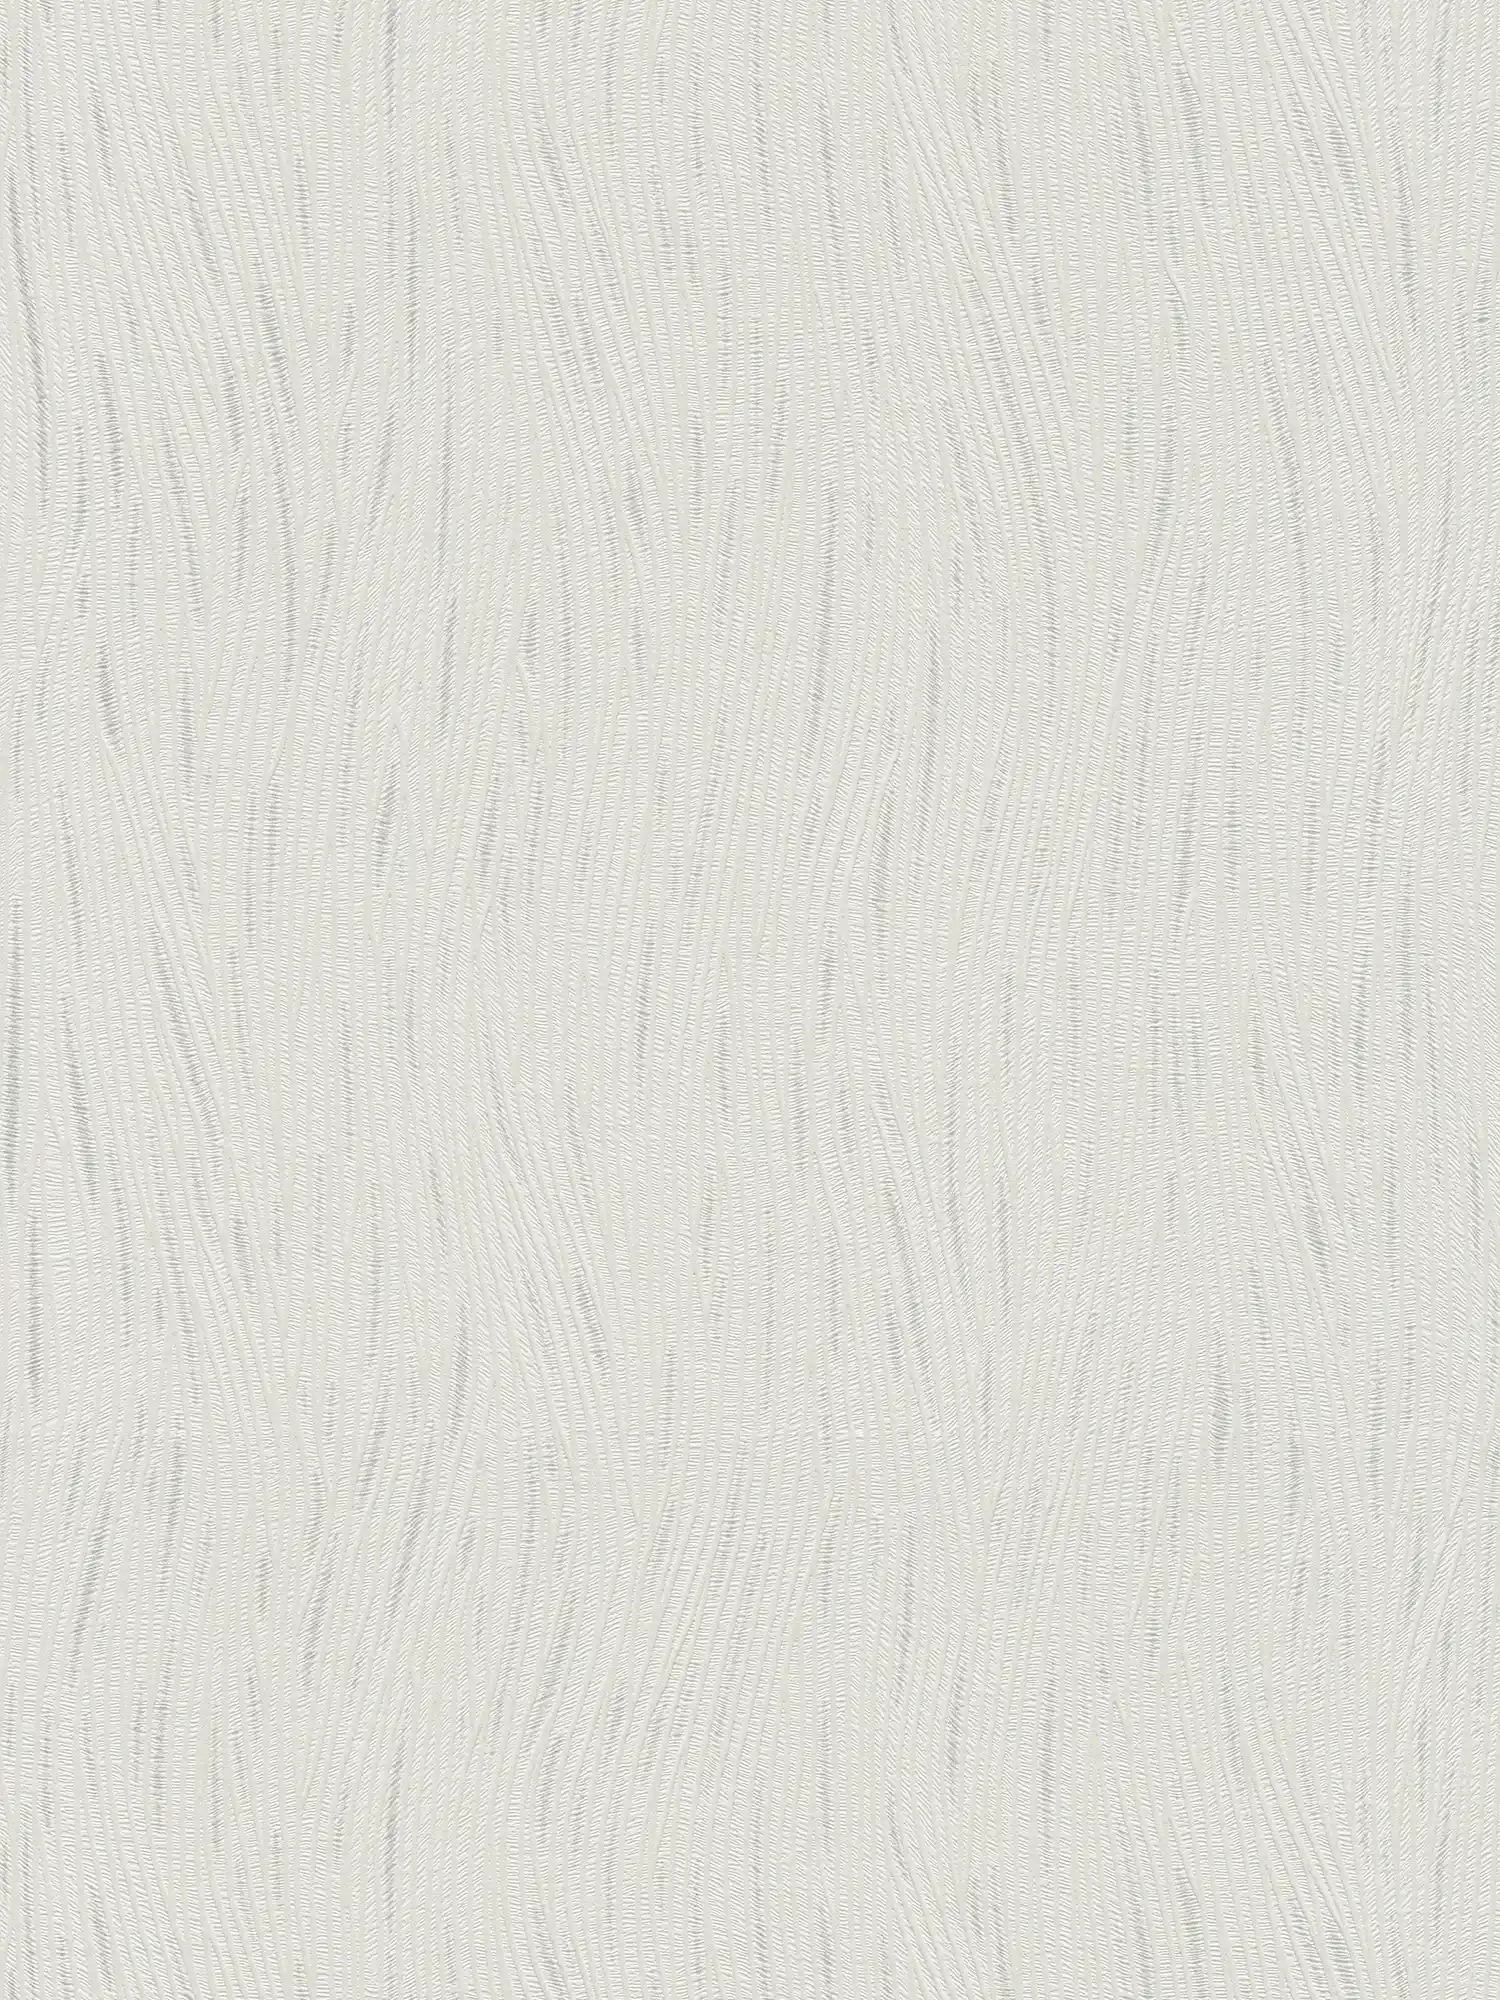 Grafisch behang golfpatroon en metalen accenten - wit, zilver
